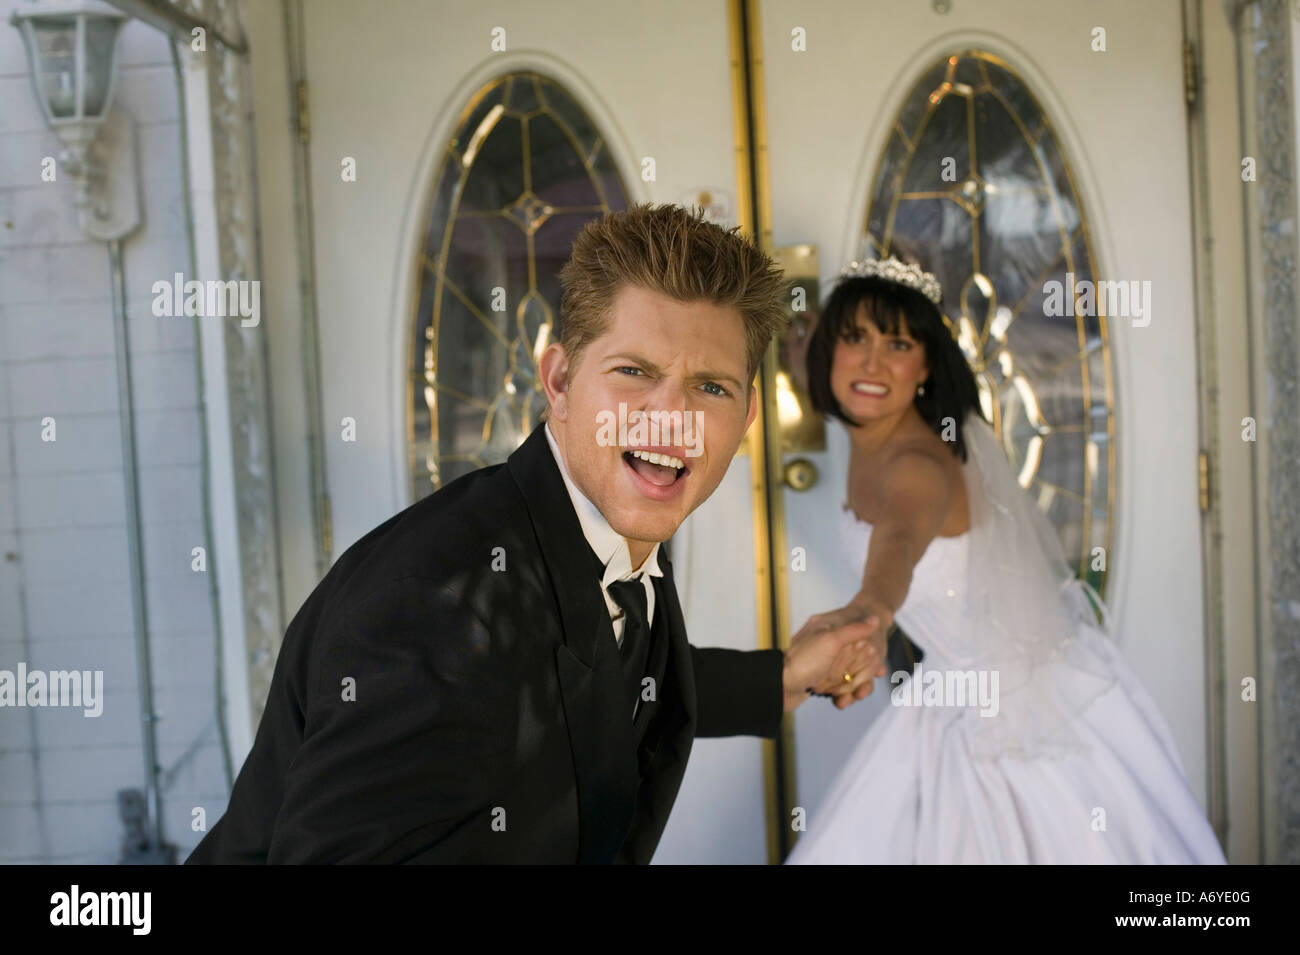 Bride dragging groom into a wedding chapel Stock Photo